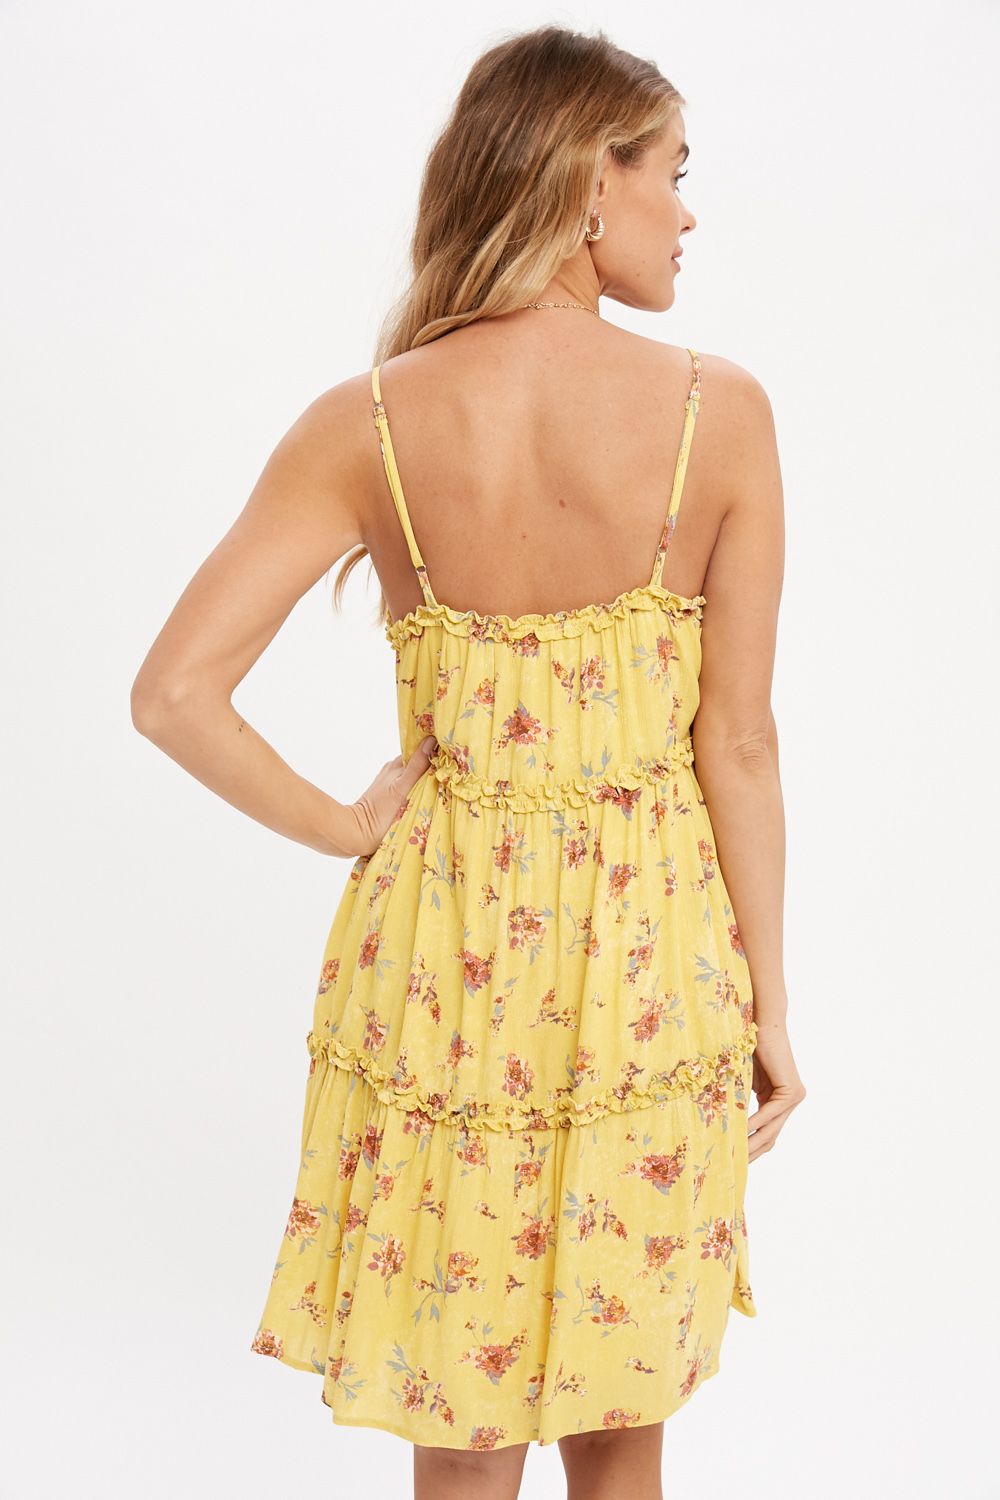 Floral Slip Dress - Lemon